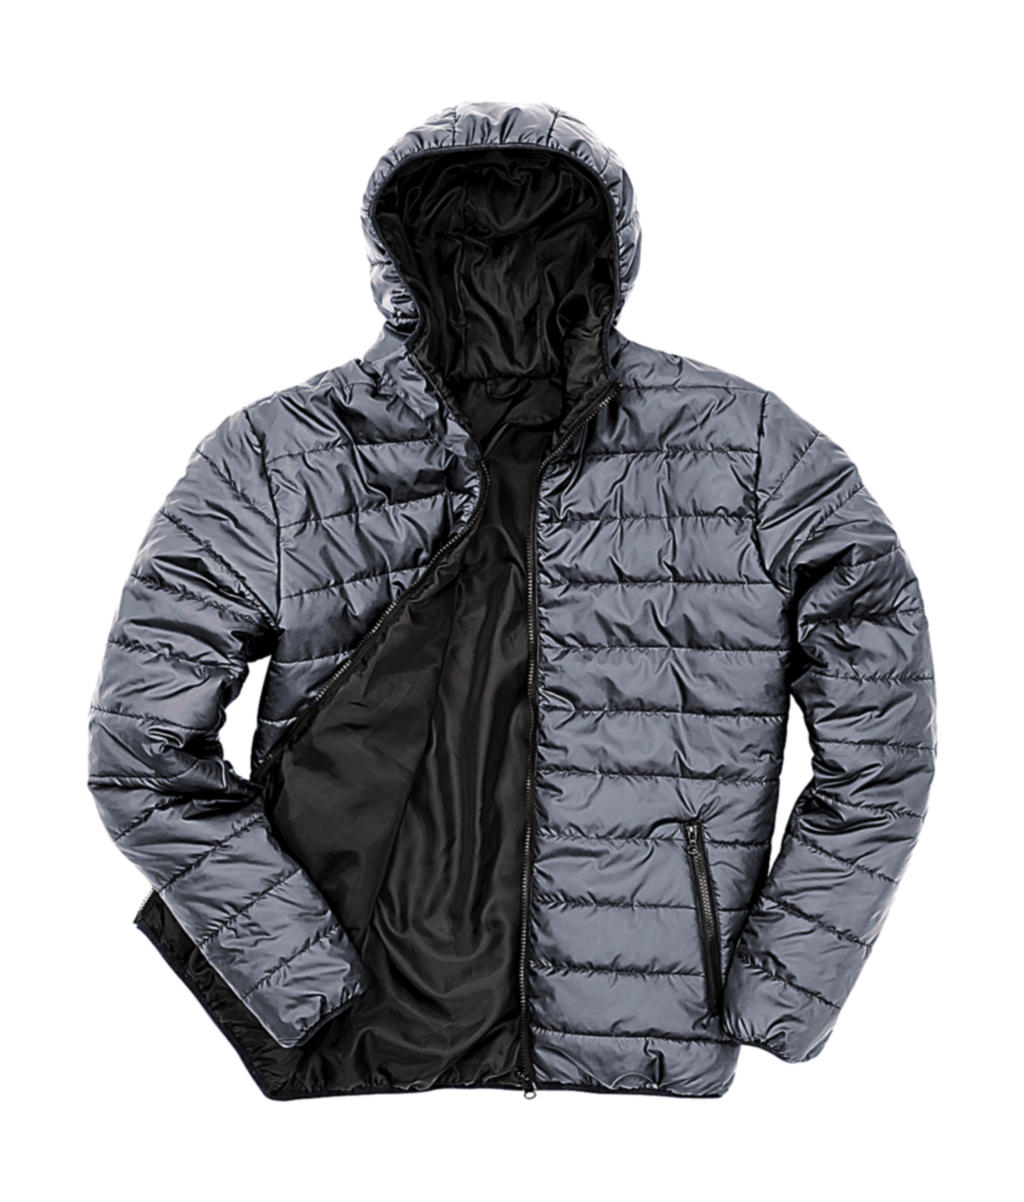 Pánská polstrovaná bunda Result s kapucí Velikost: XL, Barva: Frost Grey/Black